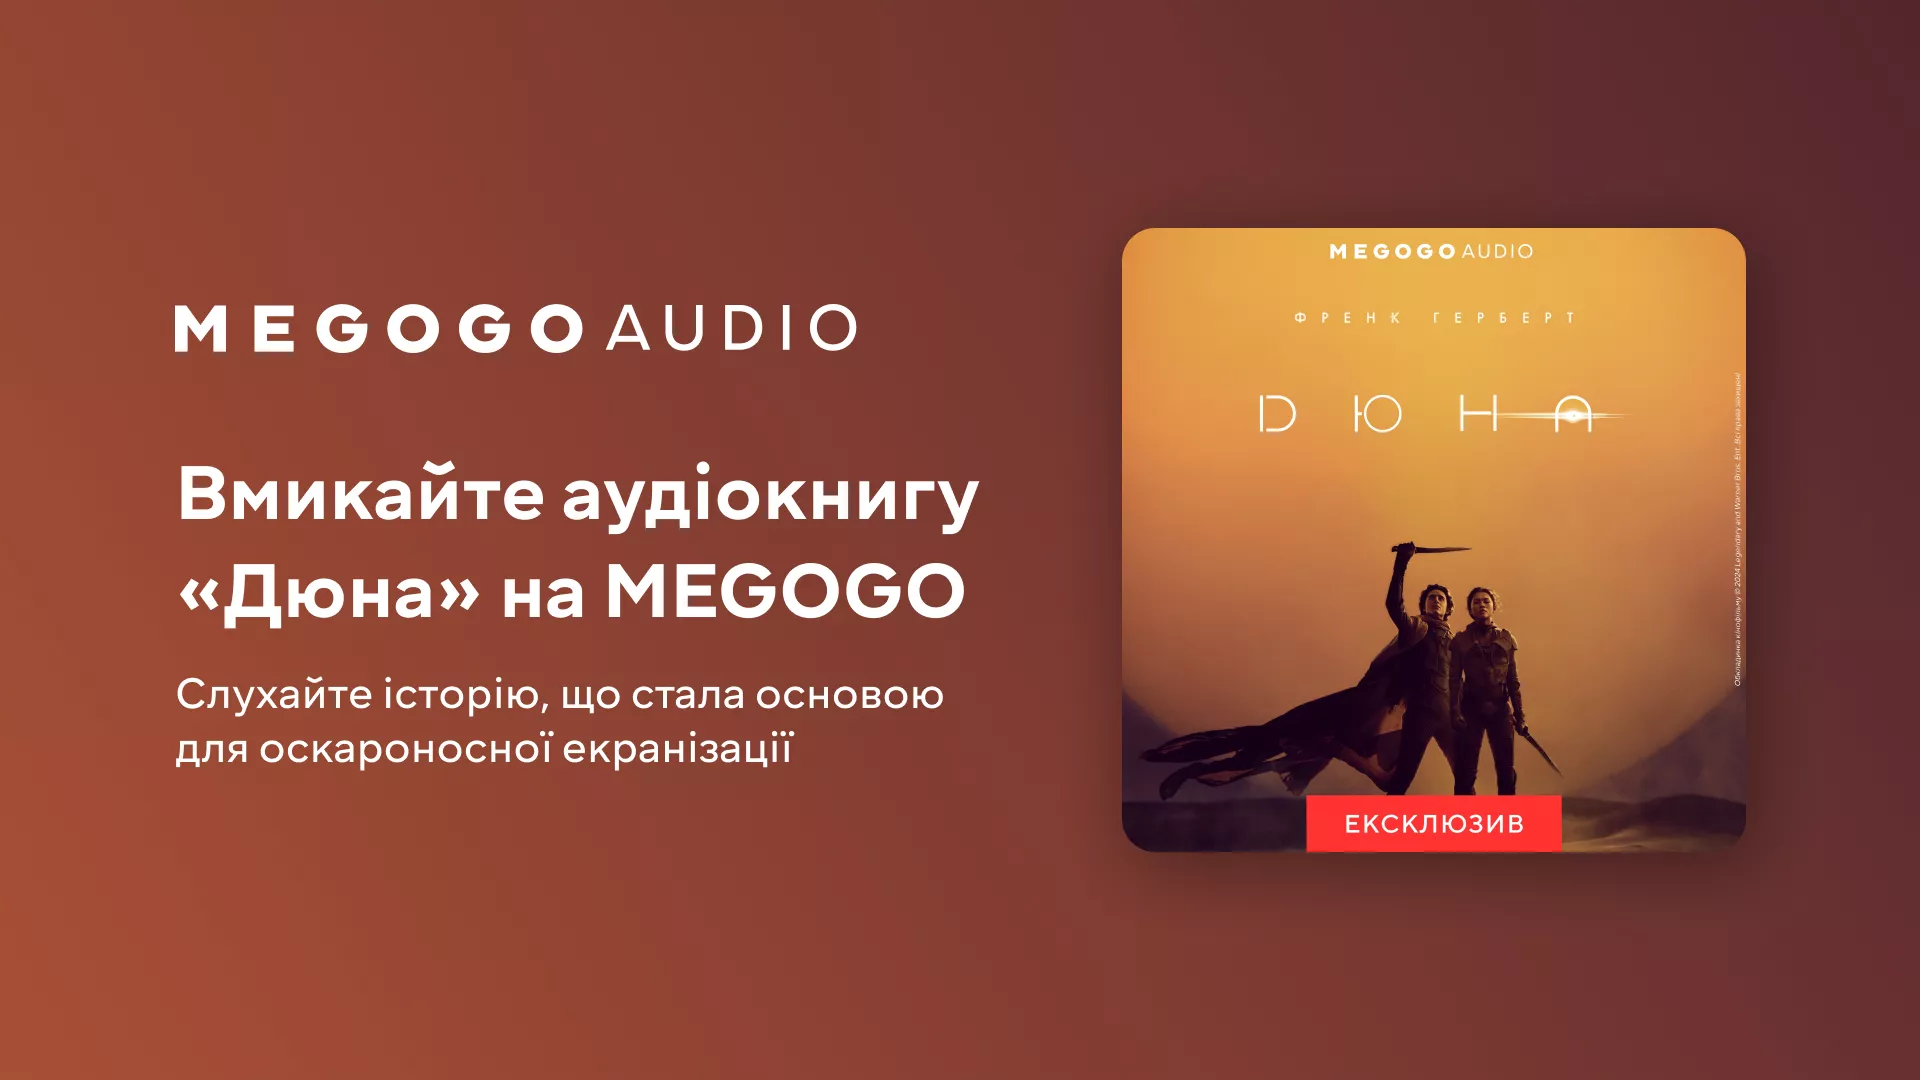 Медіасервіс Megogo випустив аудіоверсію книги «Дюна» українською